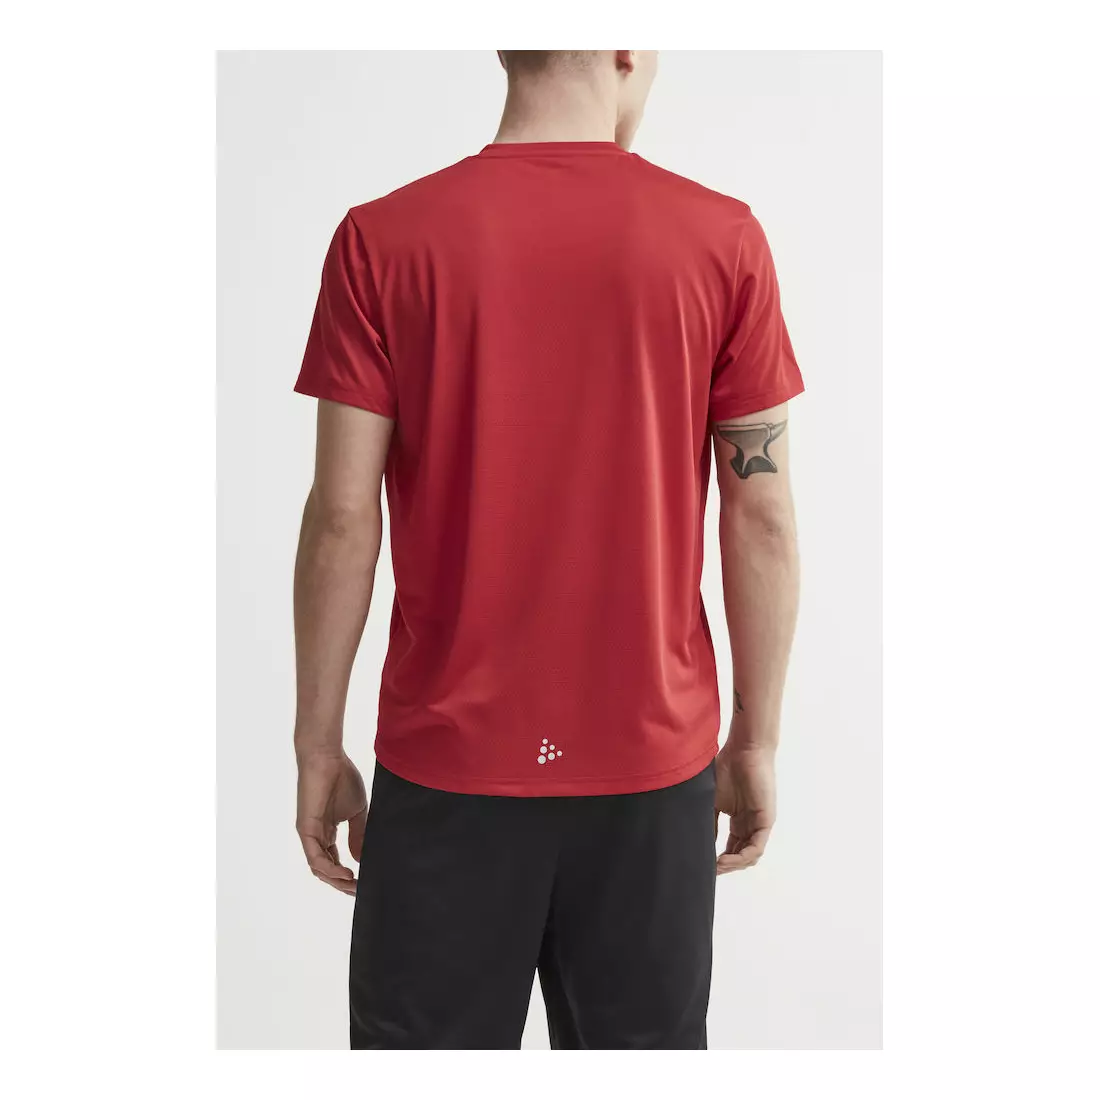 CRAFT EAZE MESH men's sports / running T-shirt red 1907018-432000